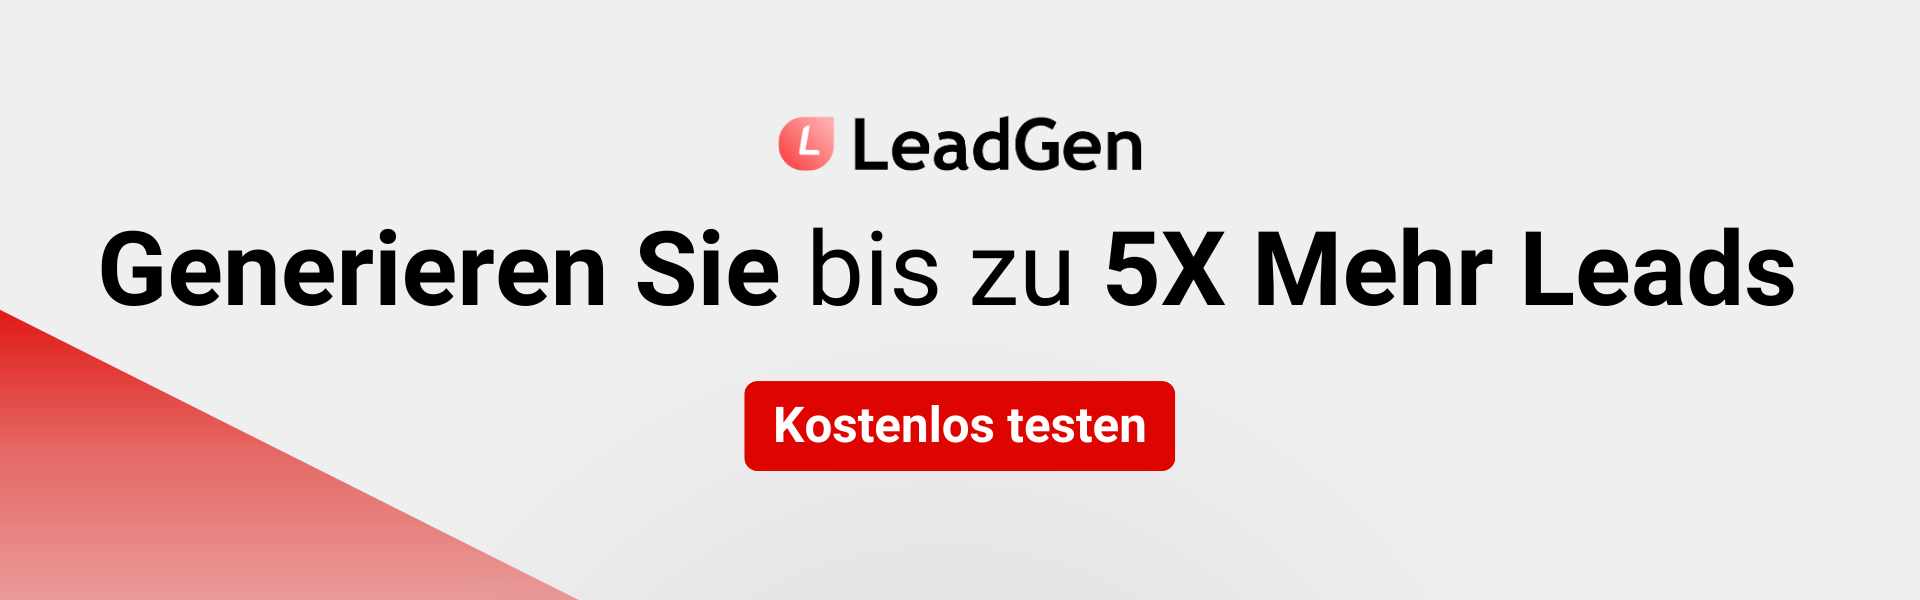 Melden Sie sich beim LeadGen-App-Banner an